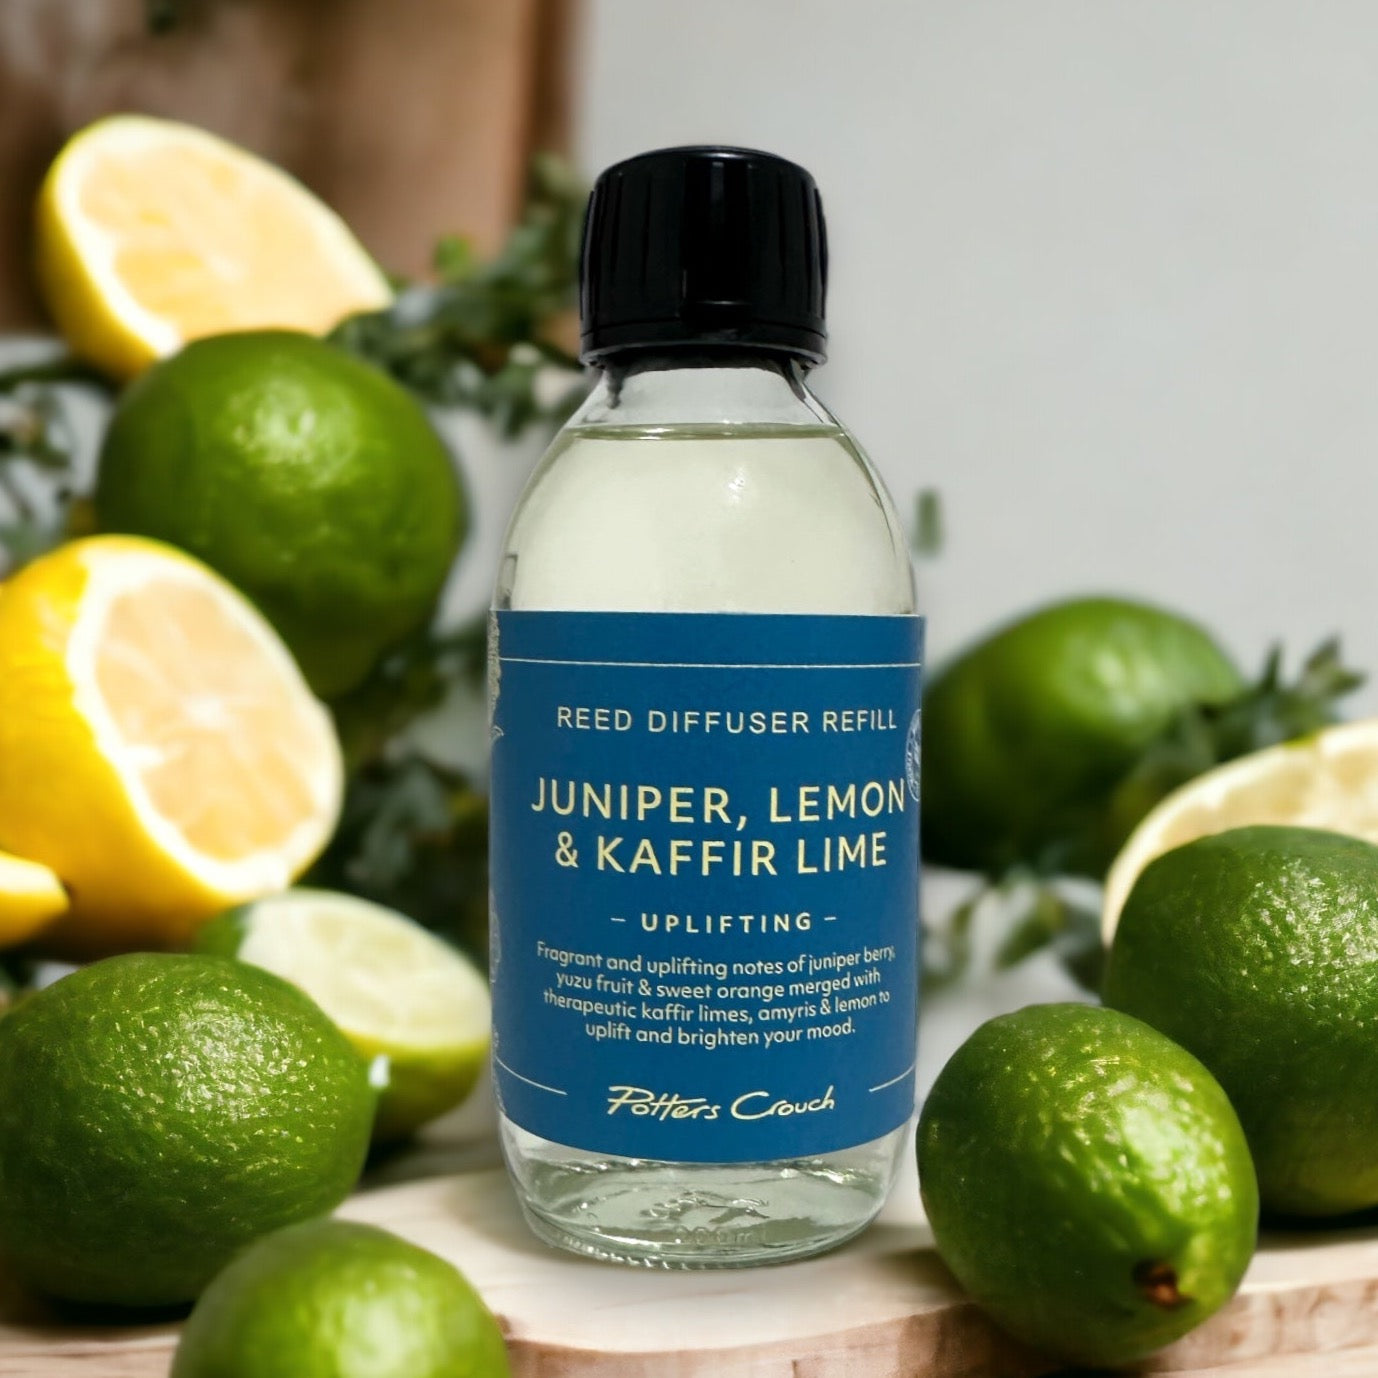 Uplift Diffuser Refill with Juniper, Lemon & Kaffir Lime